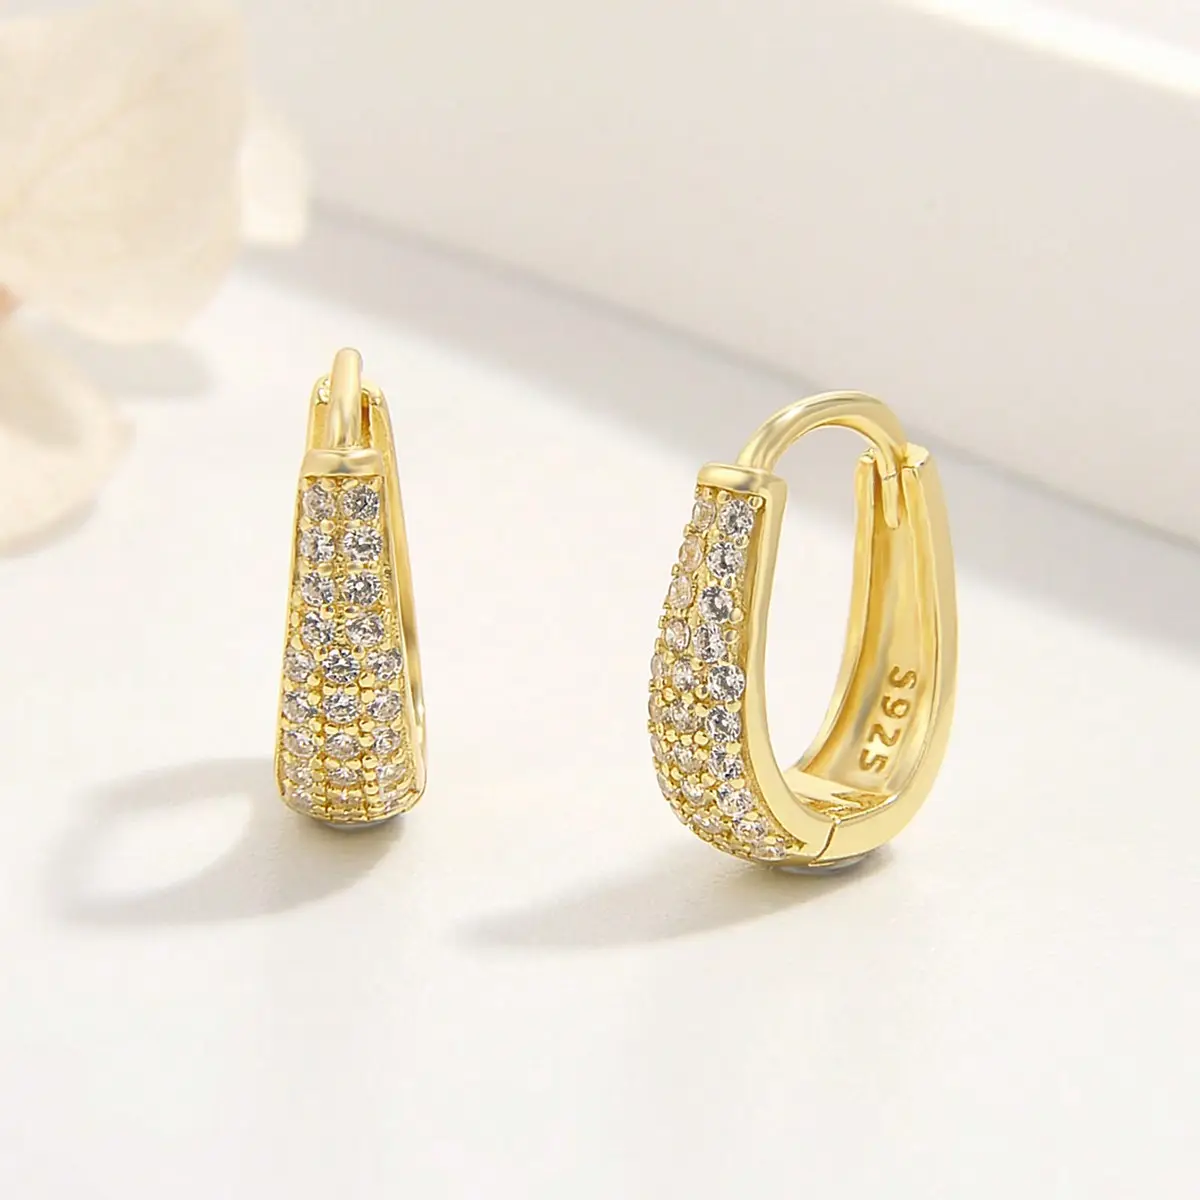 Wholesale Jewelry 925 Sterling Silver Gold Plated CZ Diamond Oval Huggie Hoop Earrings Women Gift